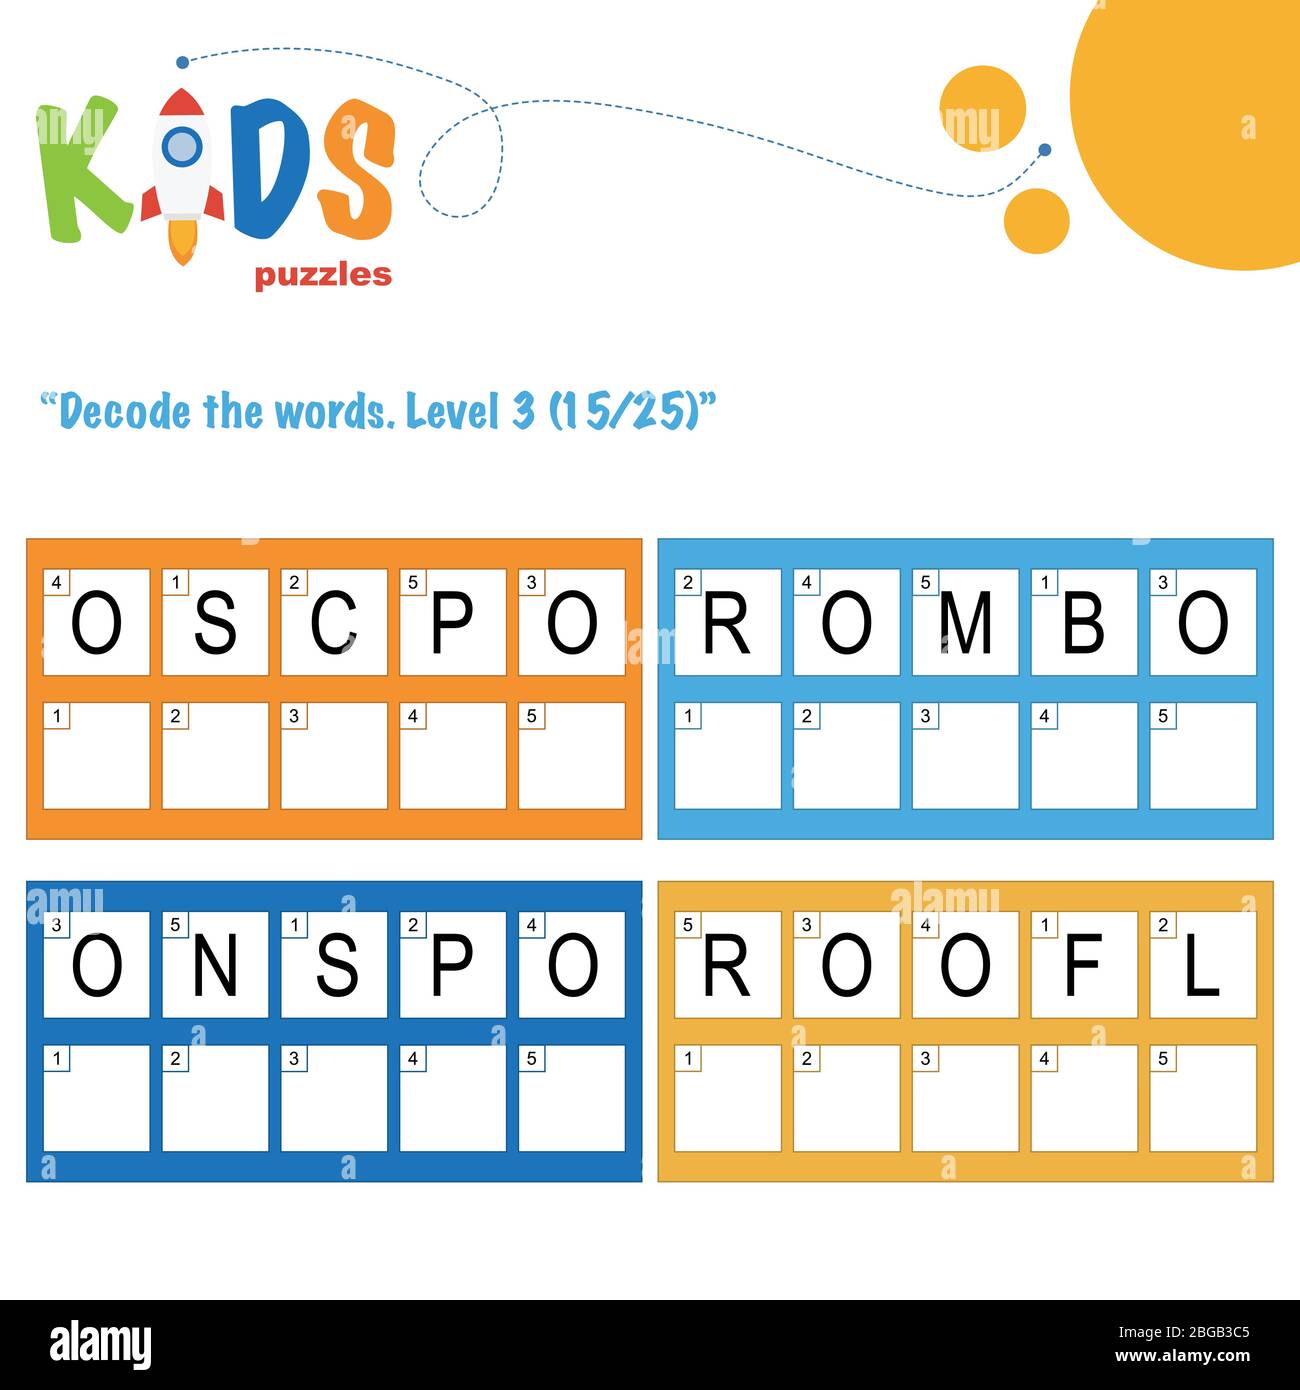 Dekodieren Sie die 5-Buchstaben-Wörter. Arbeitsblattübung für Kinder im Vorschulalter, in der Grundschule und in der Mittelstufe. Spaß Logik Puzzle Aktivität Blatt. Stock Vektor